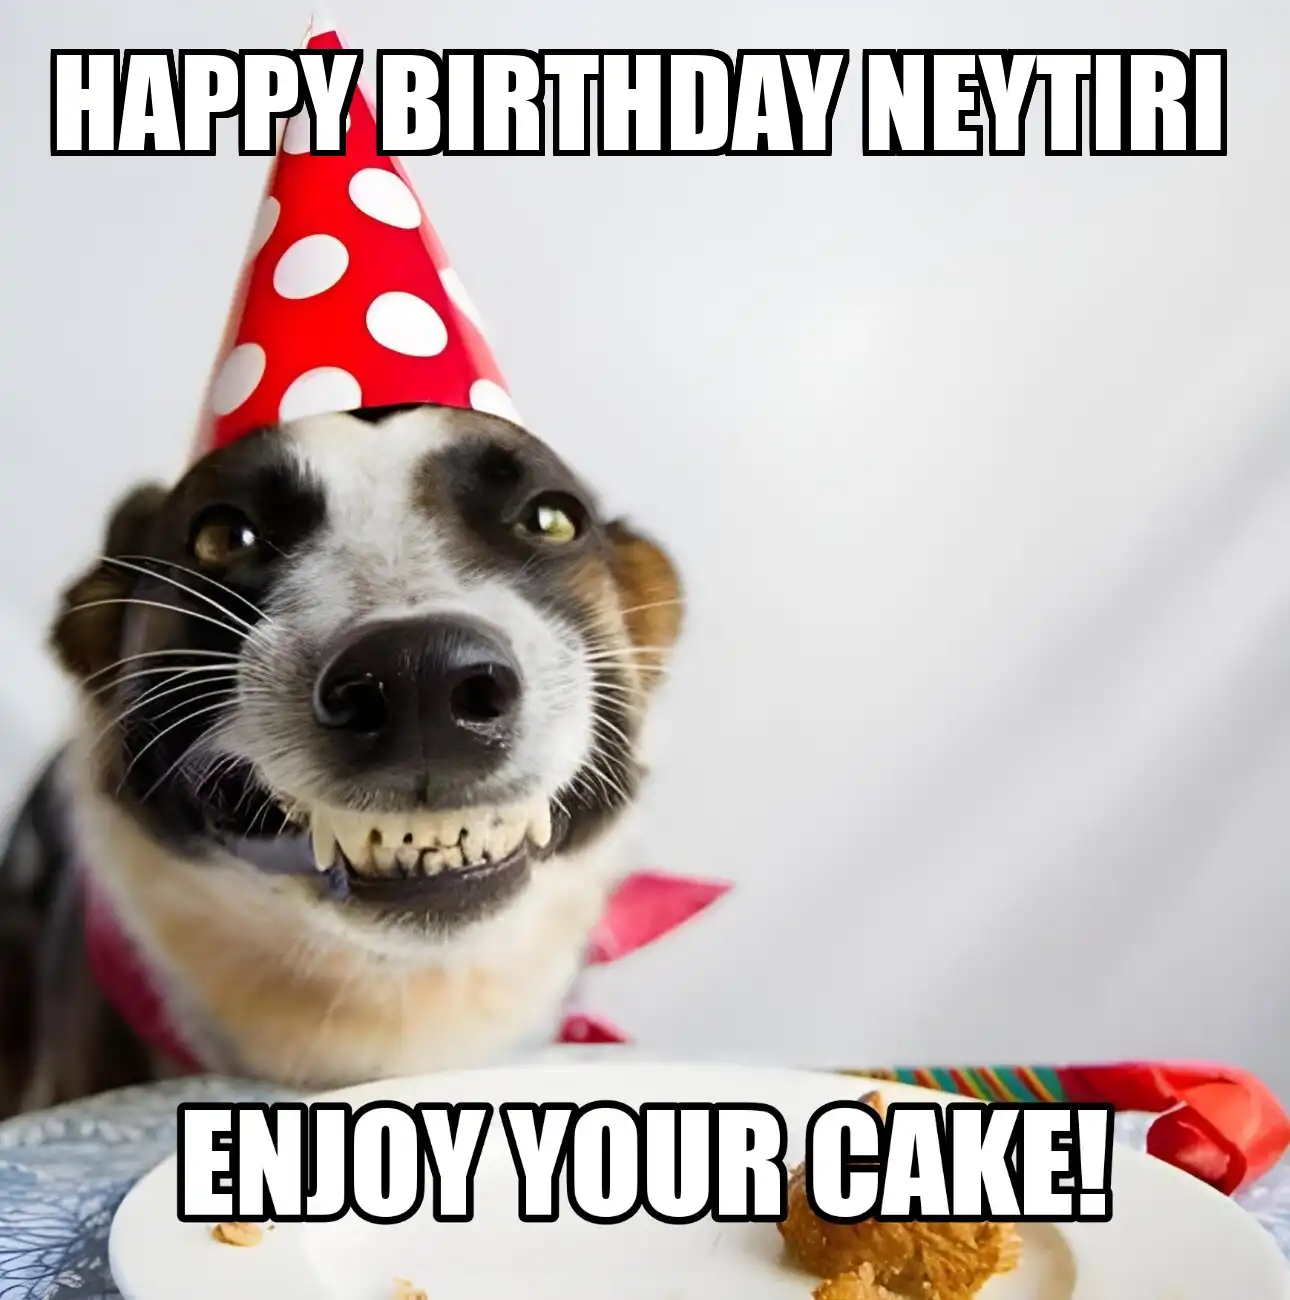 Happy Birthday Neytiri Enjoy Your Cake Dog Meme